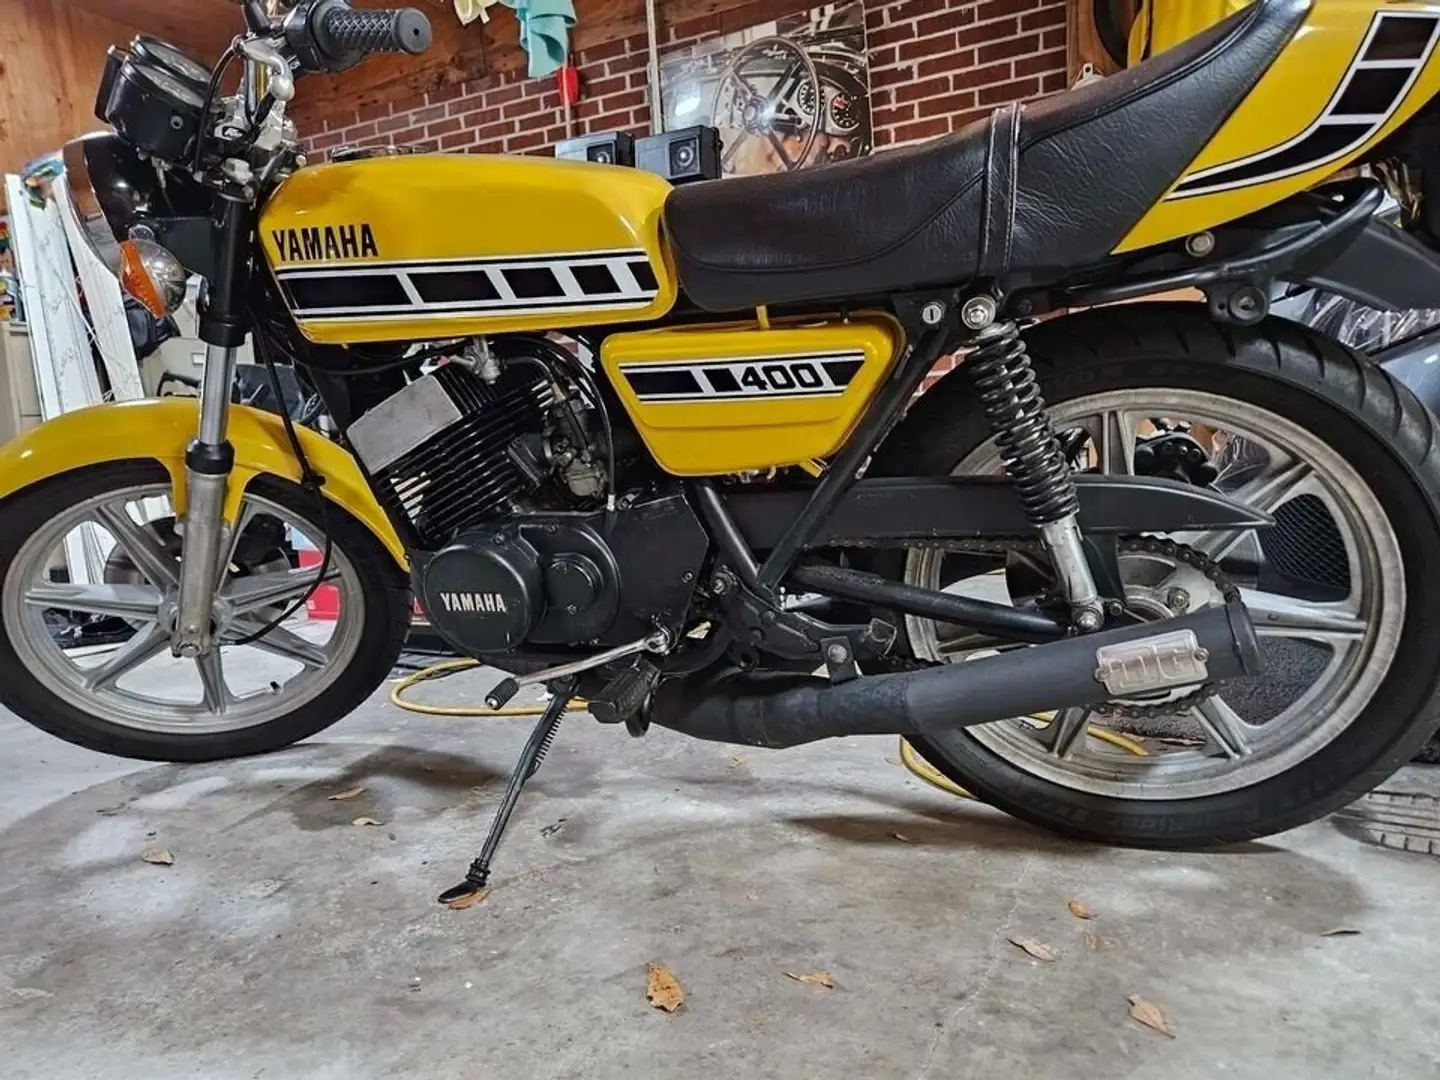 Yamaha RD 400 Yellow - 2